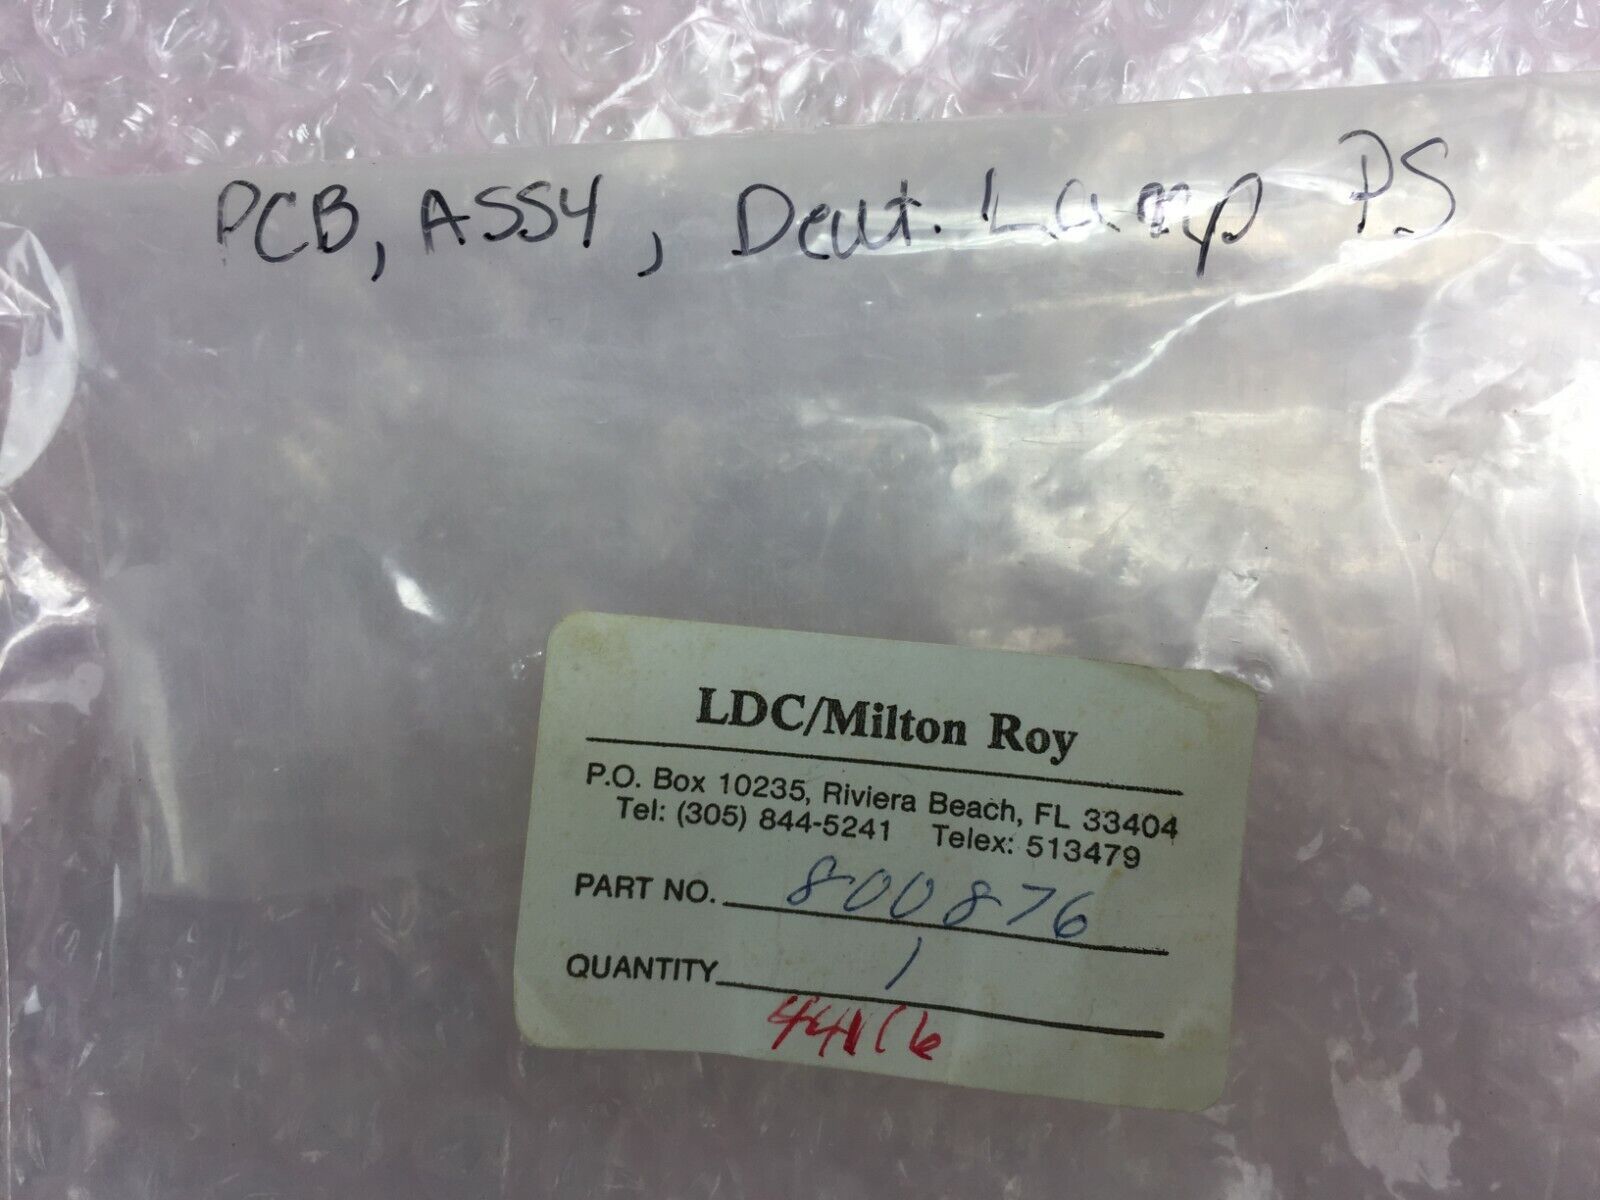 LDC / Milton Roy Part# 800876 PCB Assy Deut Lamp PS